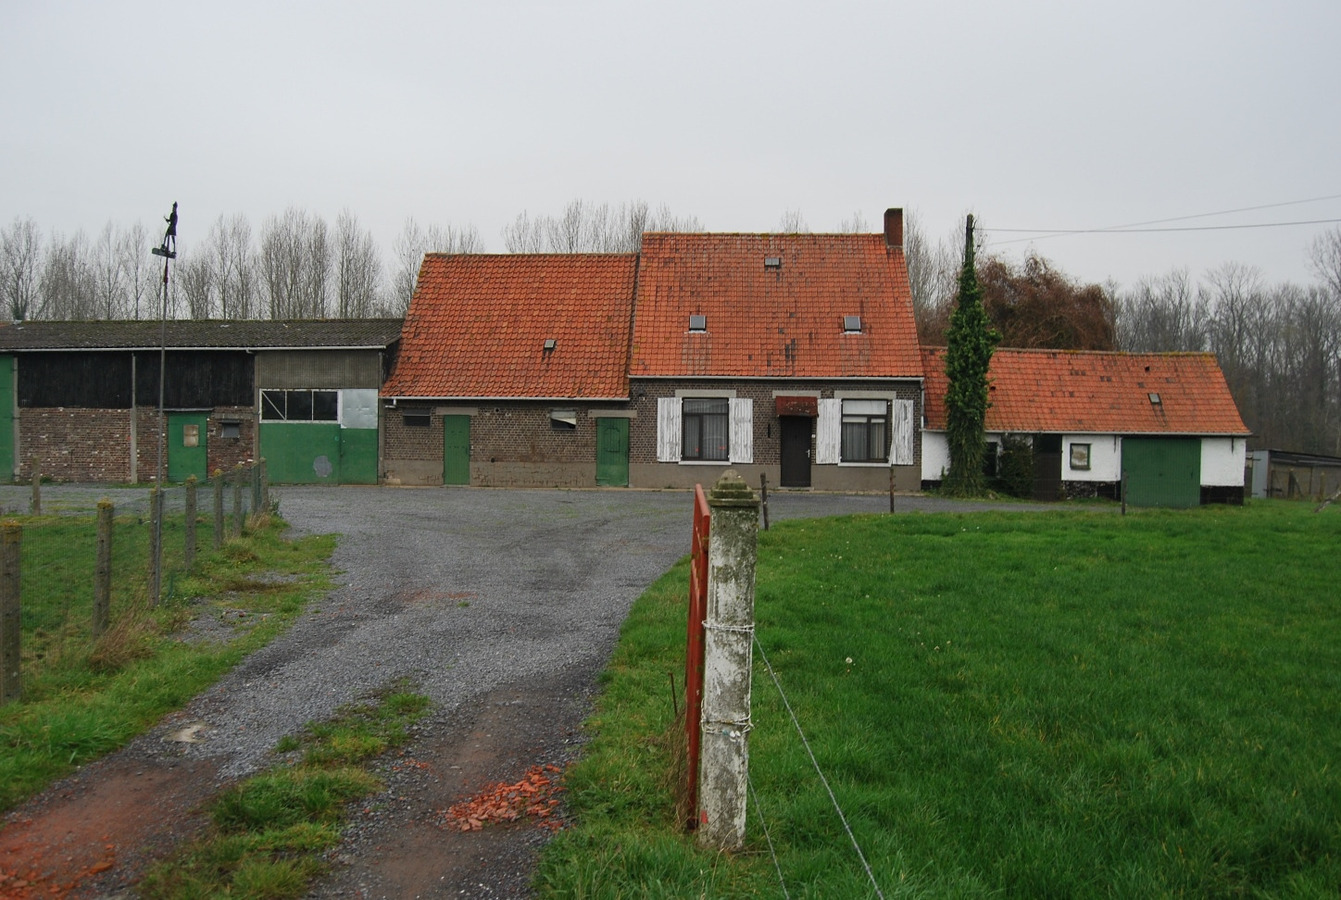 Property sold in Deinze